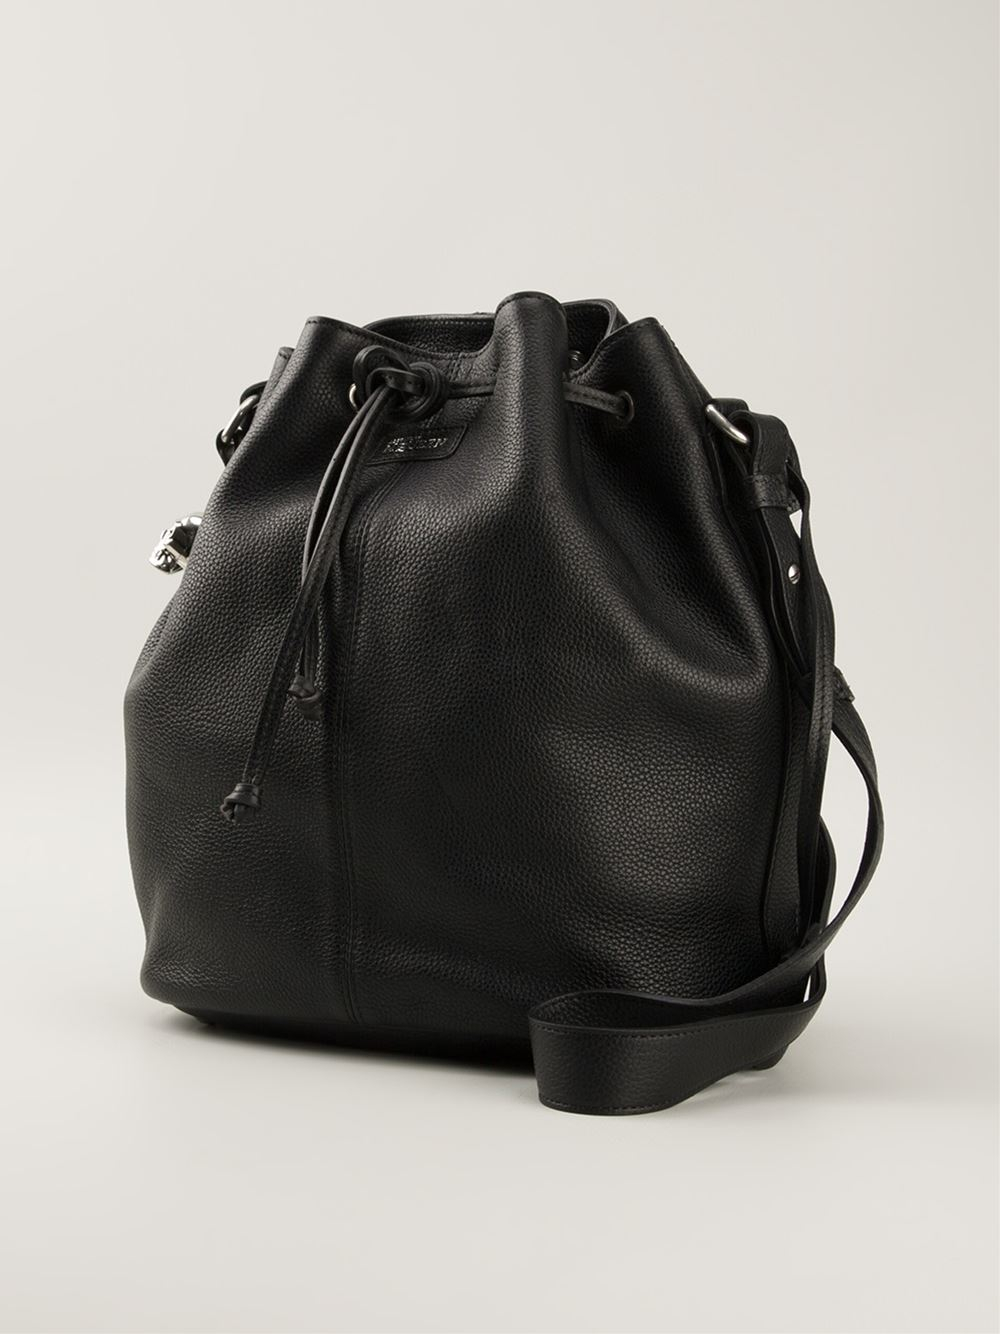 Alexander McQueen 'Padlock' Bucket Shoulder Bag in Black - Lyst